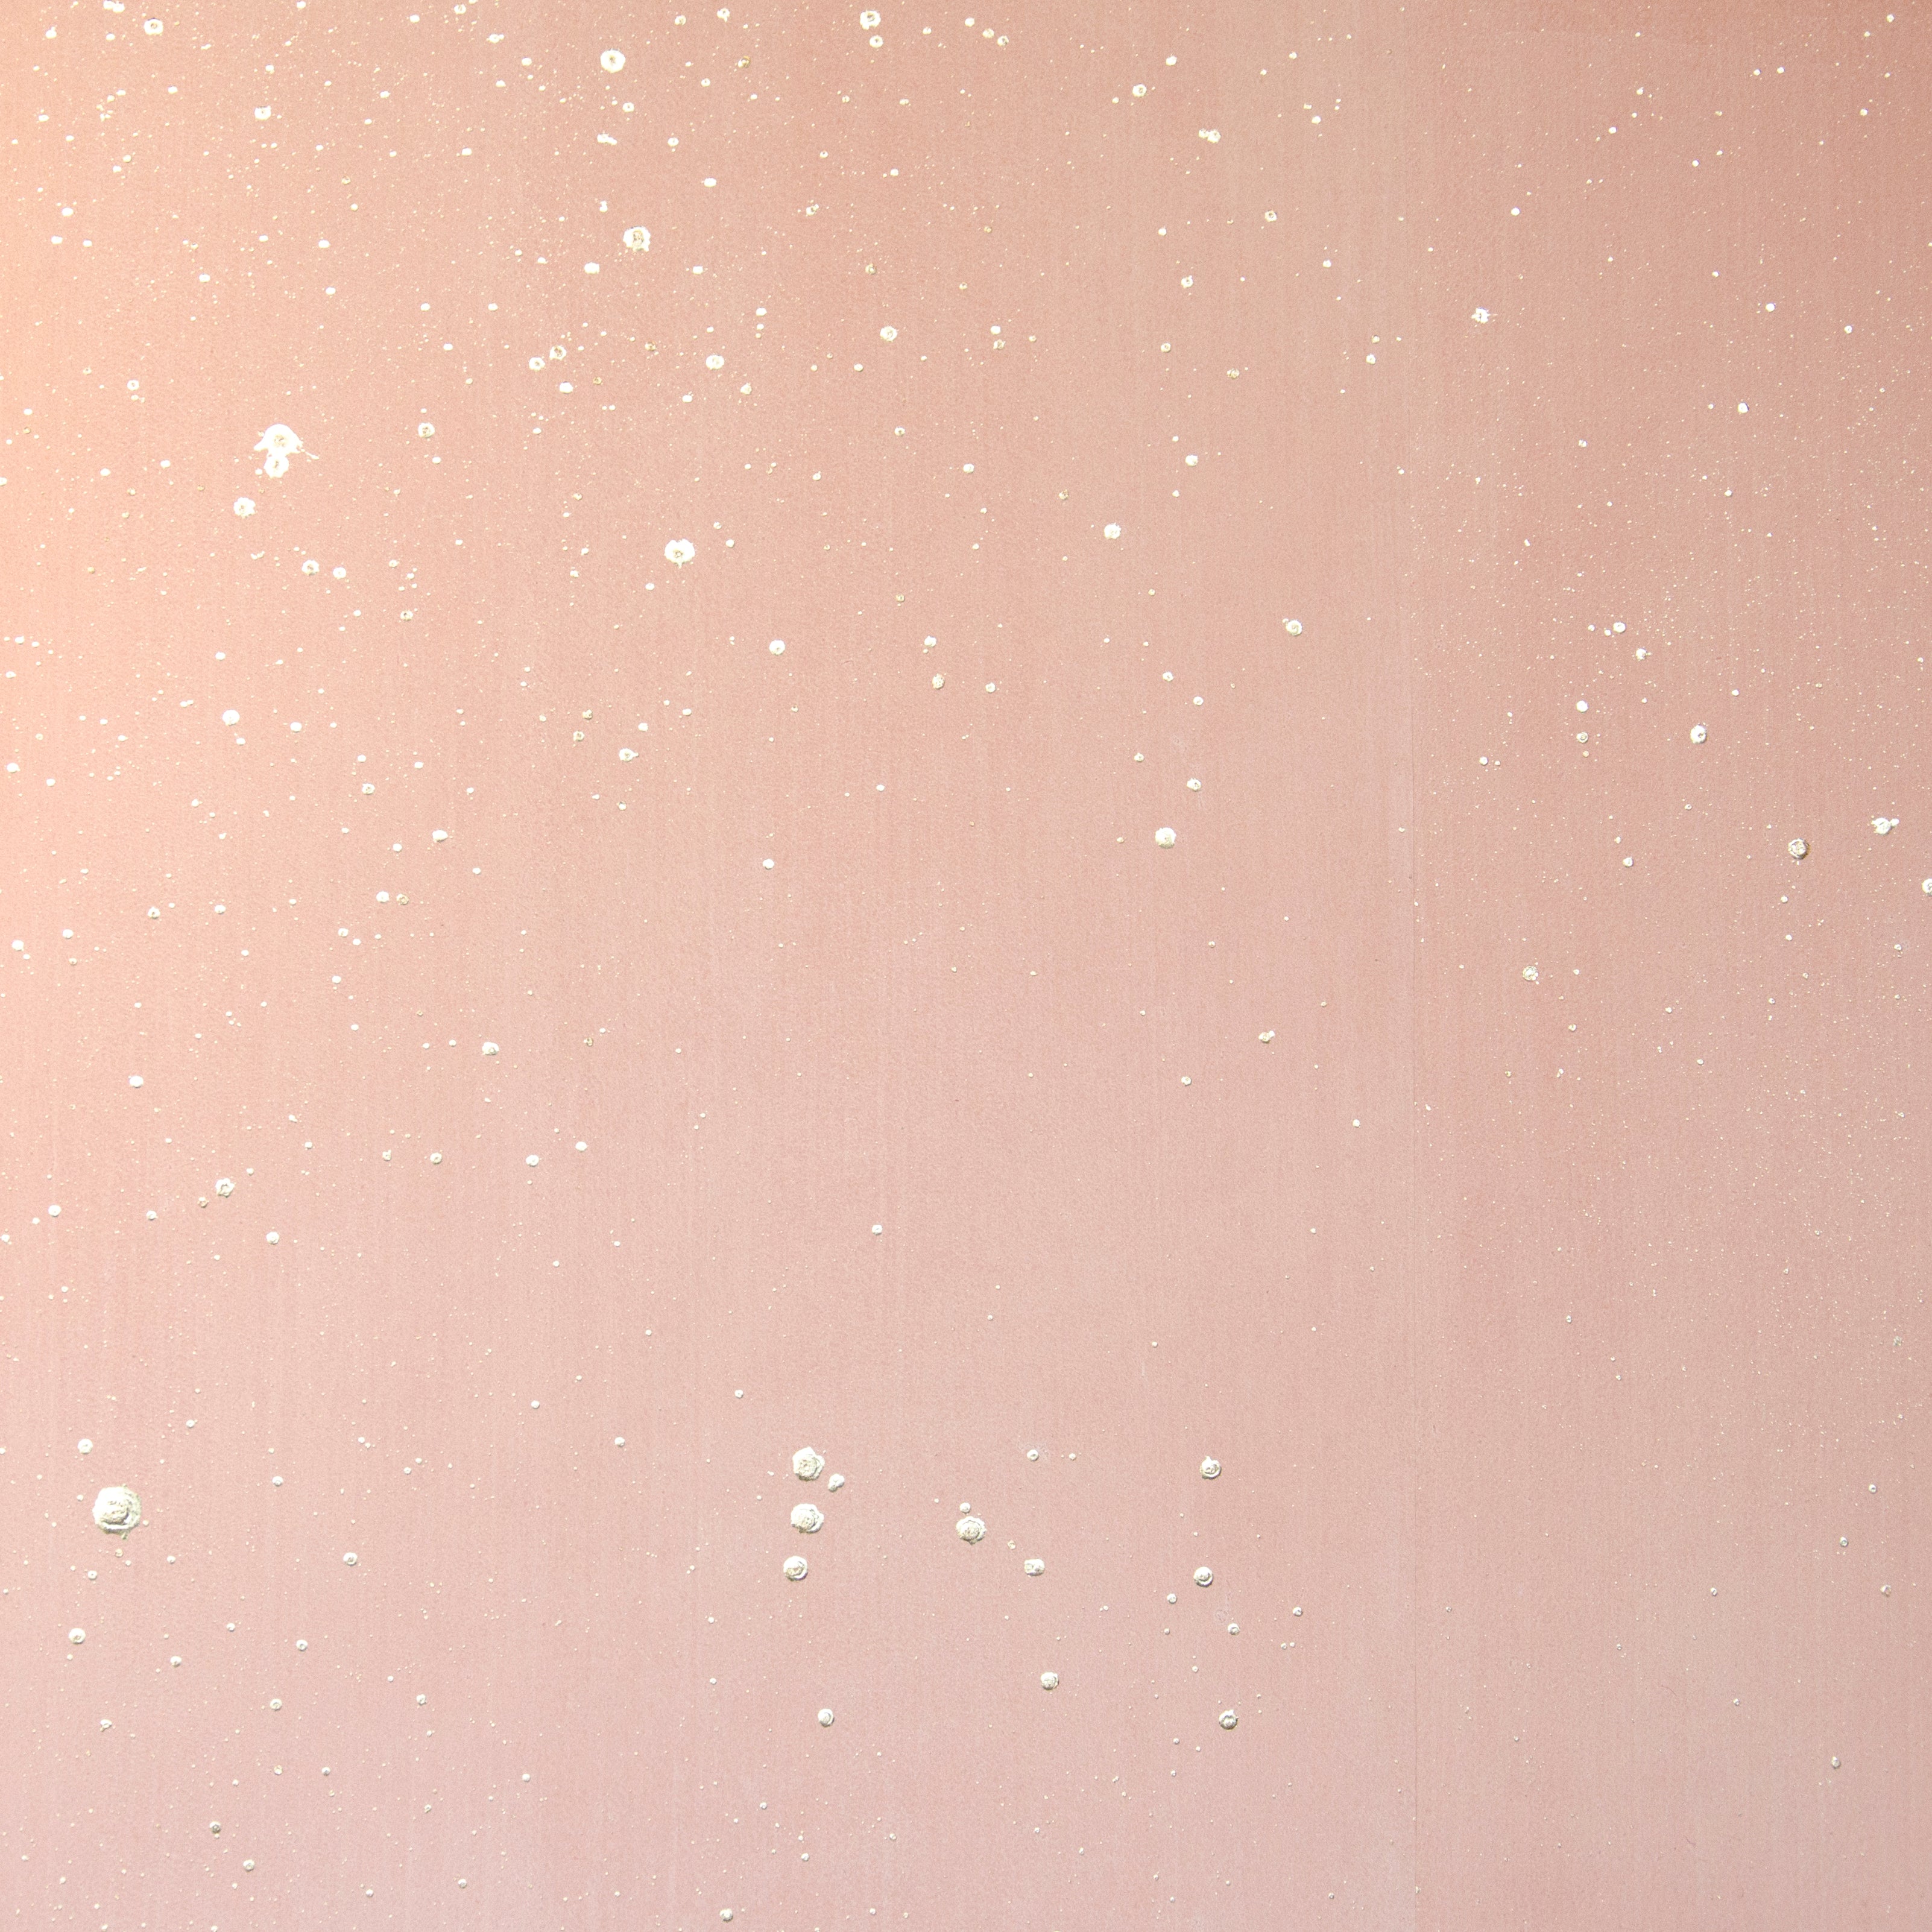 Detail of a wallpaper in a random splattered pattern in metallic cream on a pink field.